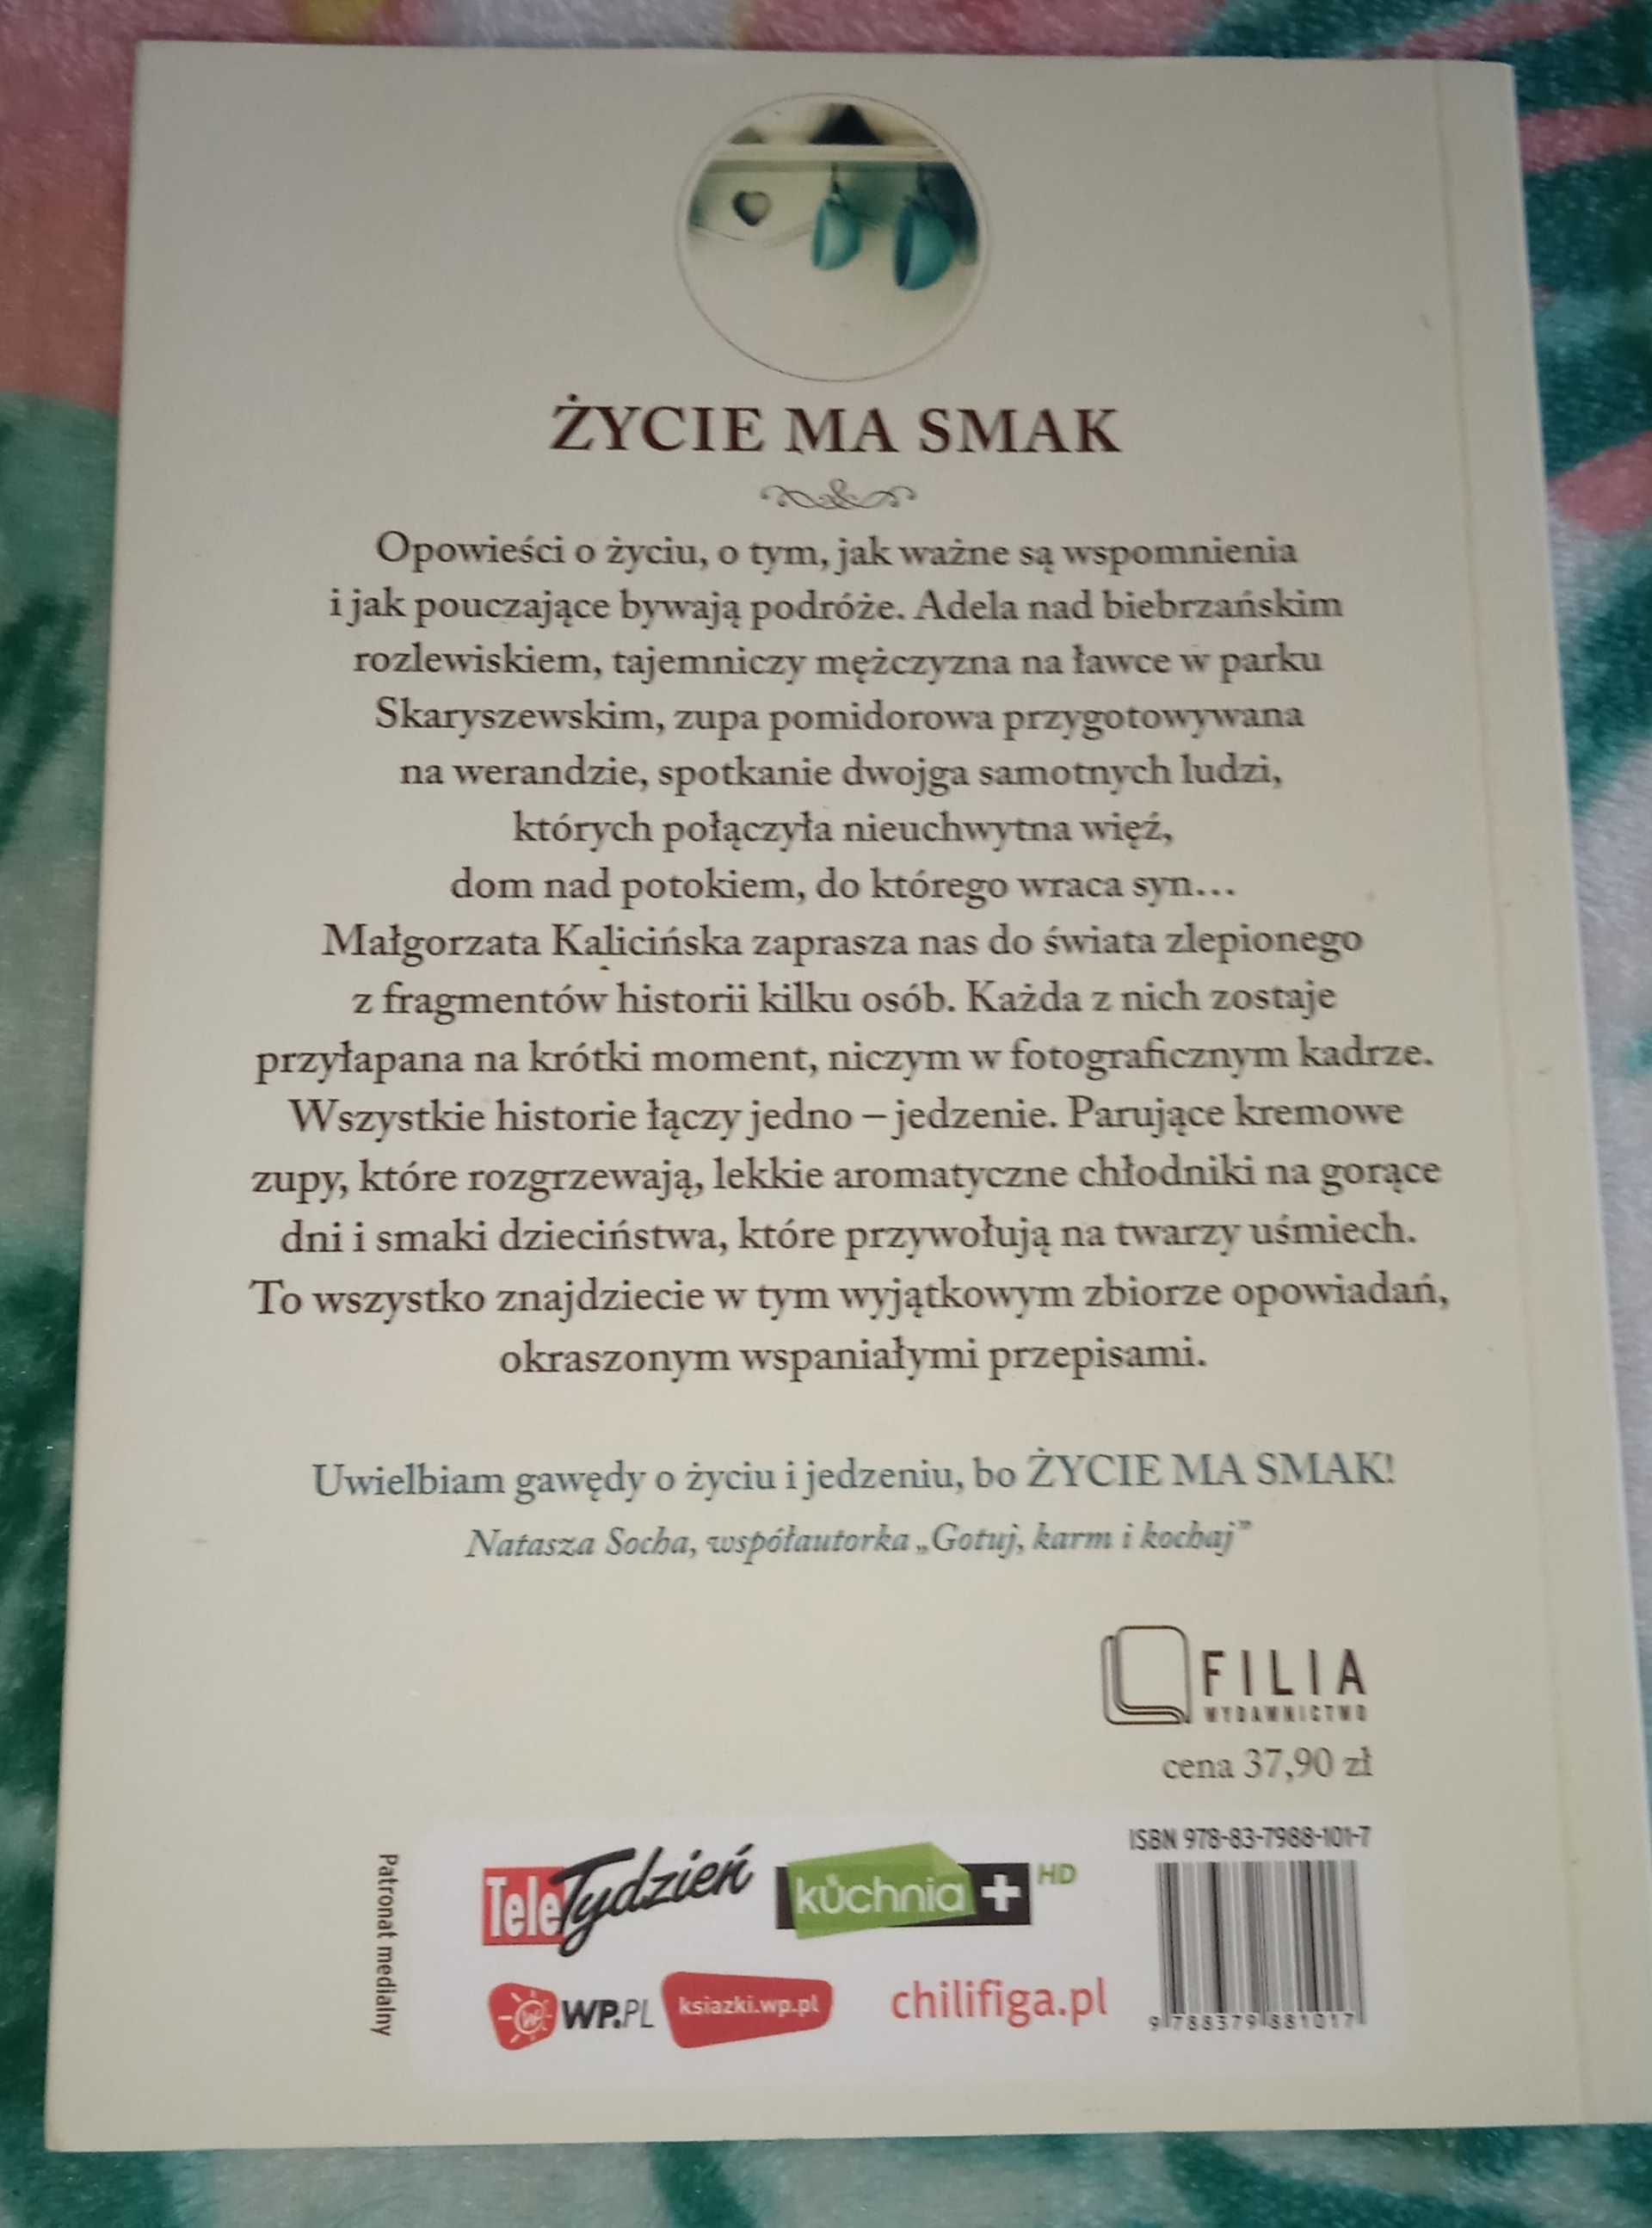 Książka Małgorzaty Kalicińskiej "Życie ma smak"